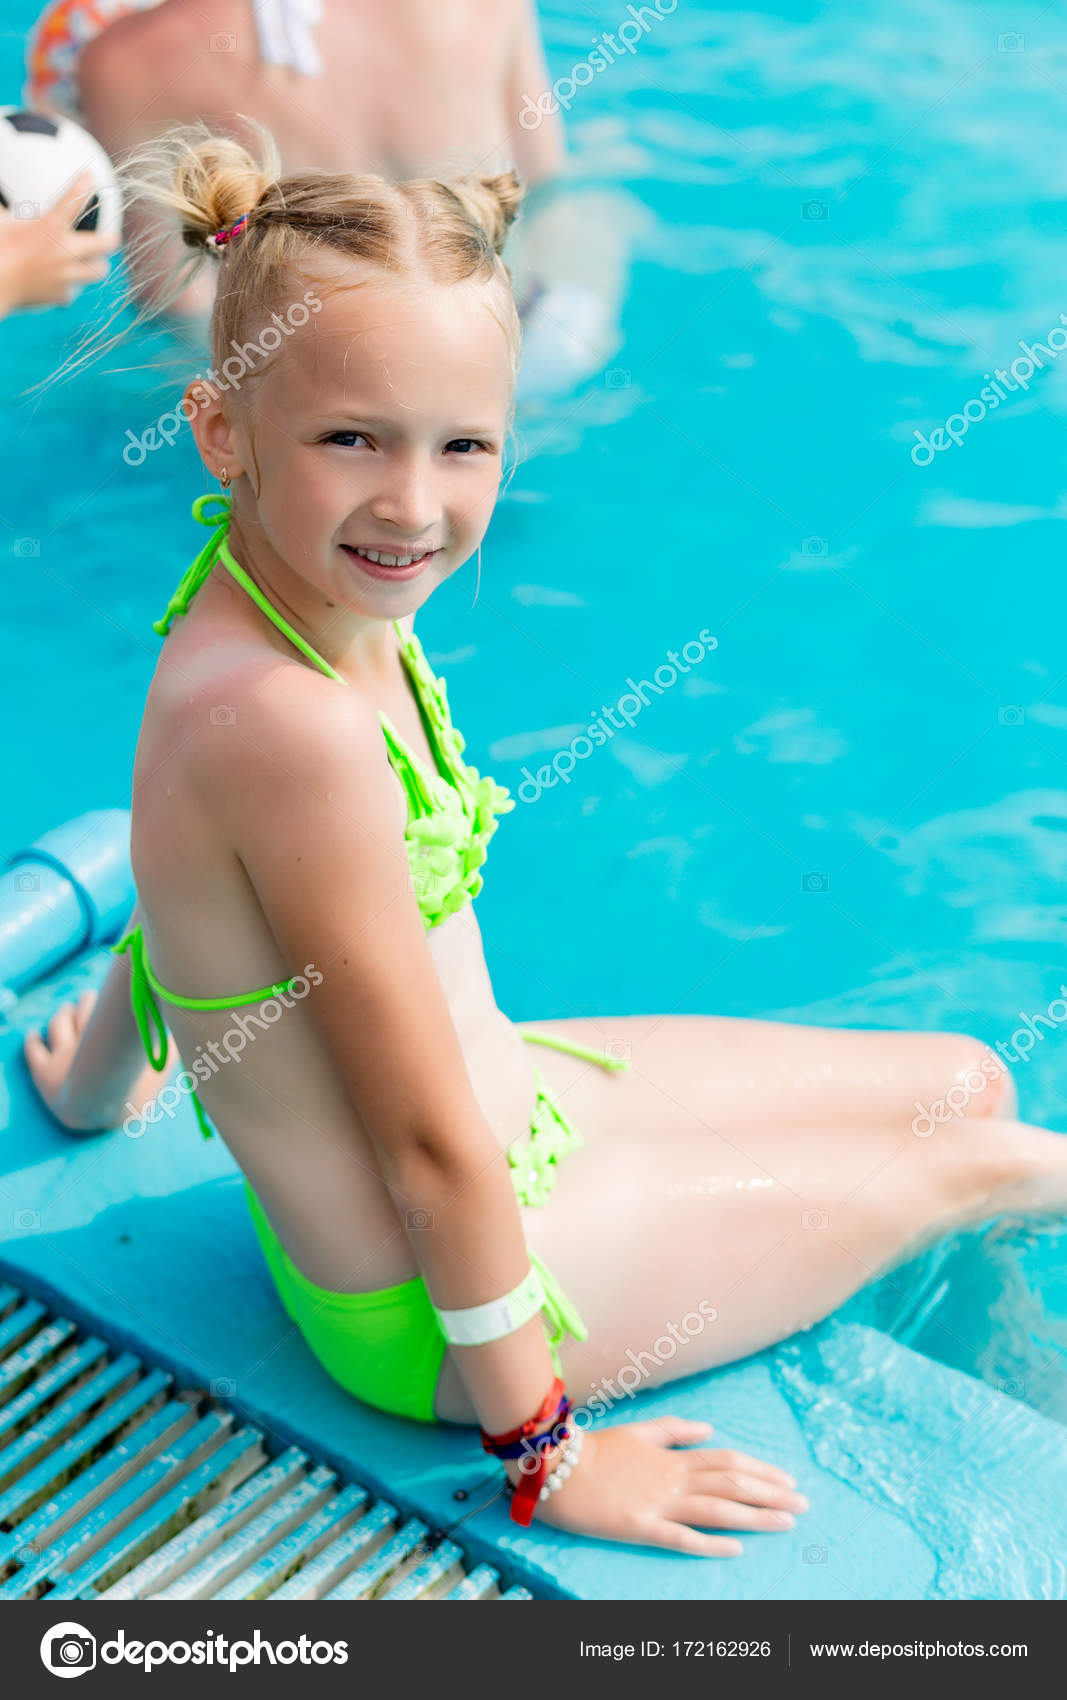 Девочка купается купальник. Мелкие девчонки в бассейне. Девочка купальник бассейн. Красивые девушки в бассейне в купальнике. Девочка купается в бассейне.